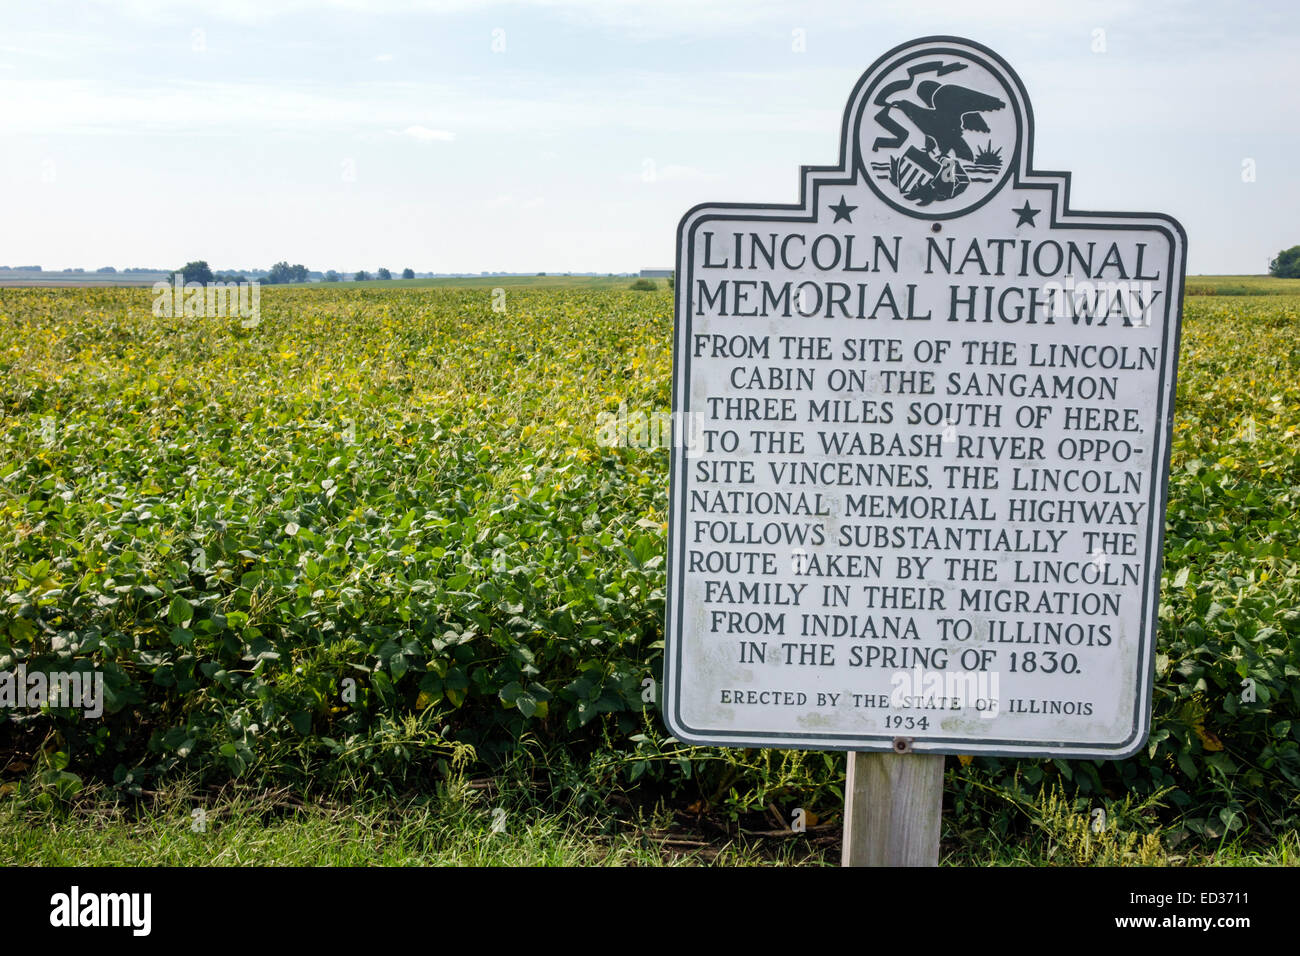 Illinois Decatur, Abraham Lincoln National Memorial Highway, indicatore stradale, rurale, terreno agricolo, campo di soia, IL140904007 Foto Stock